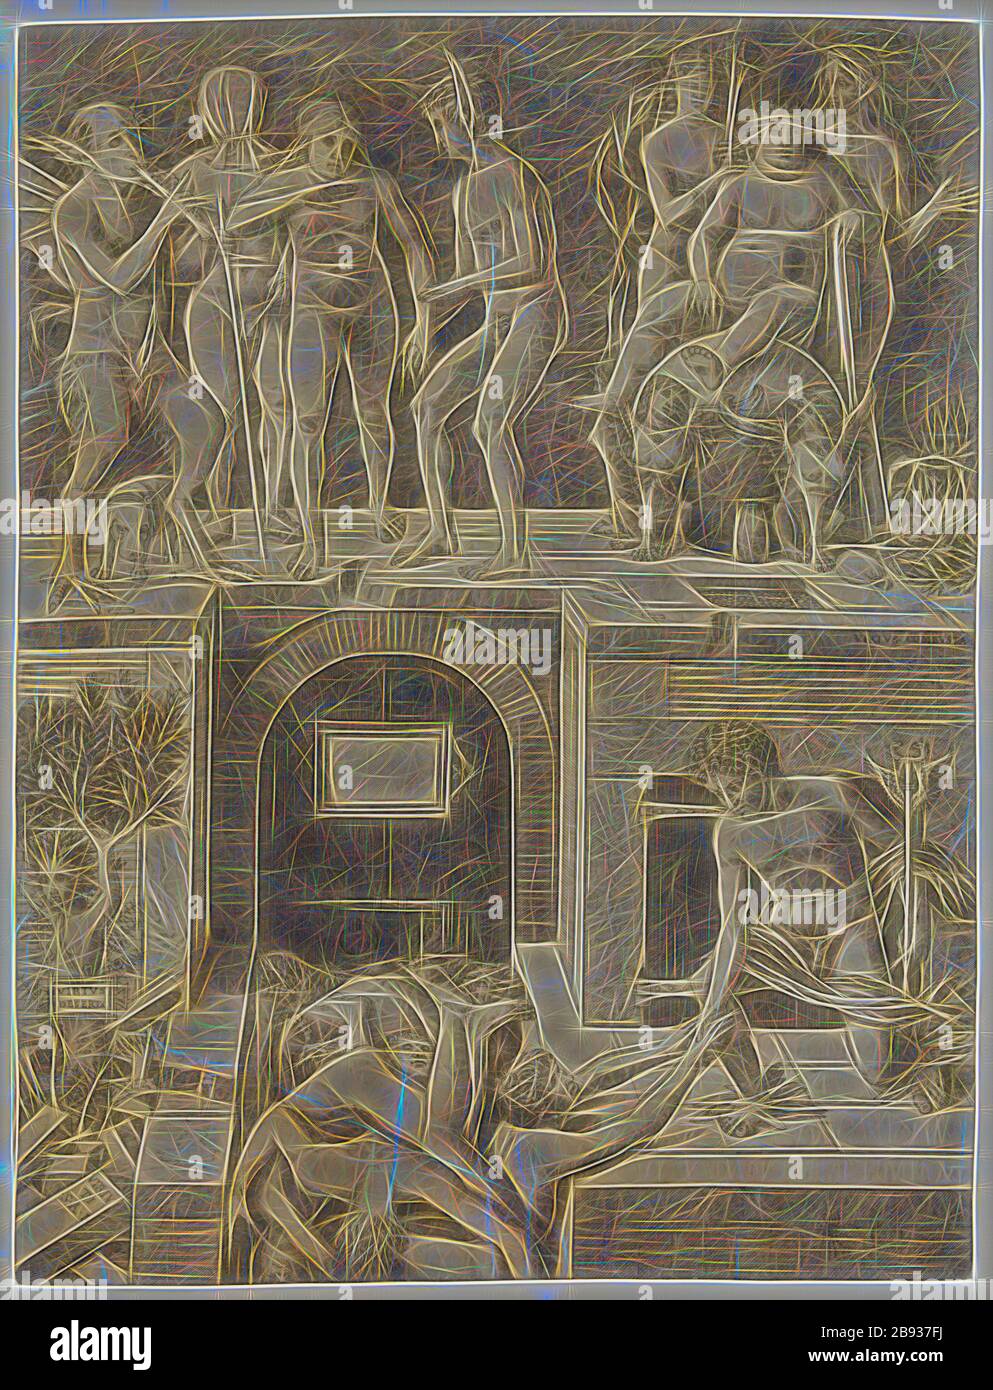 Andrea Zoan, Italienisch, 1475-1505, nach Andrea Mantegna, Italienisch, 1431-1506, Ignoranz und Merkur: Eine Allegorie der Tugend und des Vize, 16. Jahrhundert, Gravur in schwarzer Tinte auf verlegtem Papier, Blatt (innerhalb des Plattenbogens geschnitten): 21 3/4 x 16 1/4 Zoll. (55,2 x 41,2 cm), von Gibon neu vorgestellt, Design von warmem, fröhlichem Leuchten von Helligkeit und Lichtstrahlen. Klassische Kunst mit moderner Note neu erfunden. Fotografie, inspiriert vom Futurismus, die dynamische Energie moderner Technologie, Bewegung, Geschwindigkeit und Kultur revolutionieren. Stockfoto